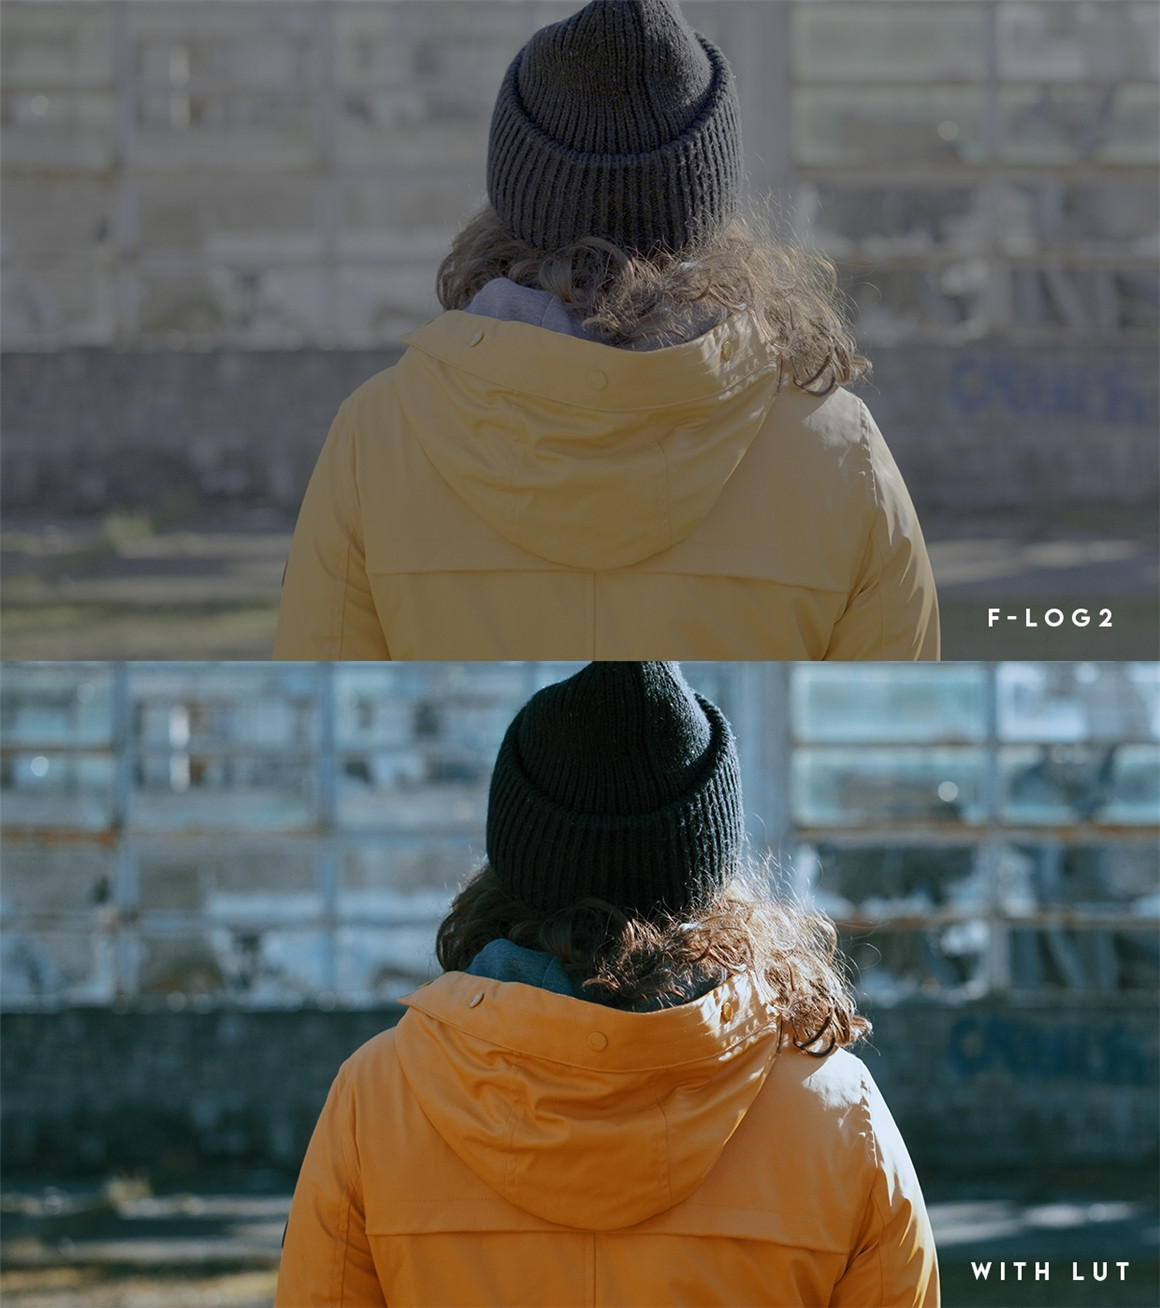 富士F-Log2下电影色彩调色LUT 支持Fujifilm XH2s，Fujifilm XH2或Fujifilm XT2（8292）图层云